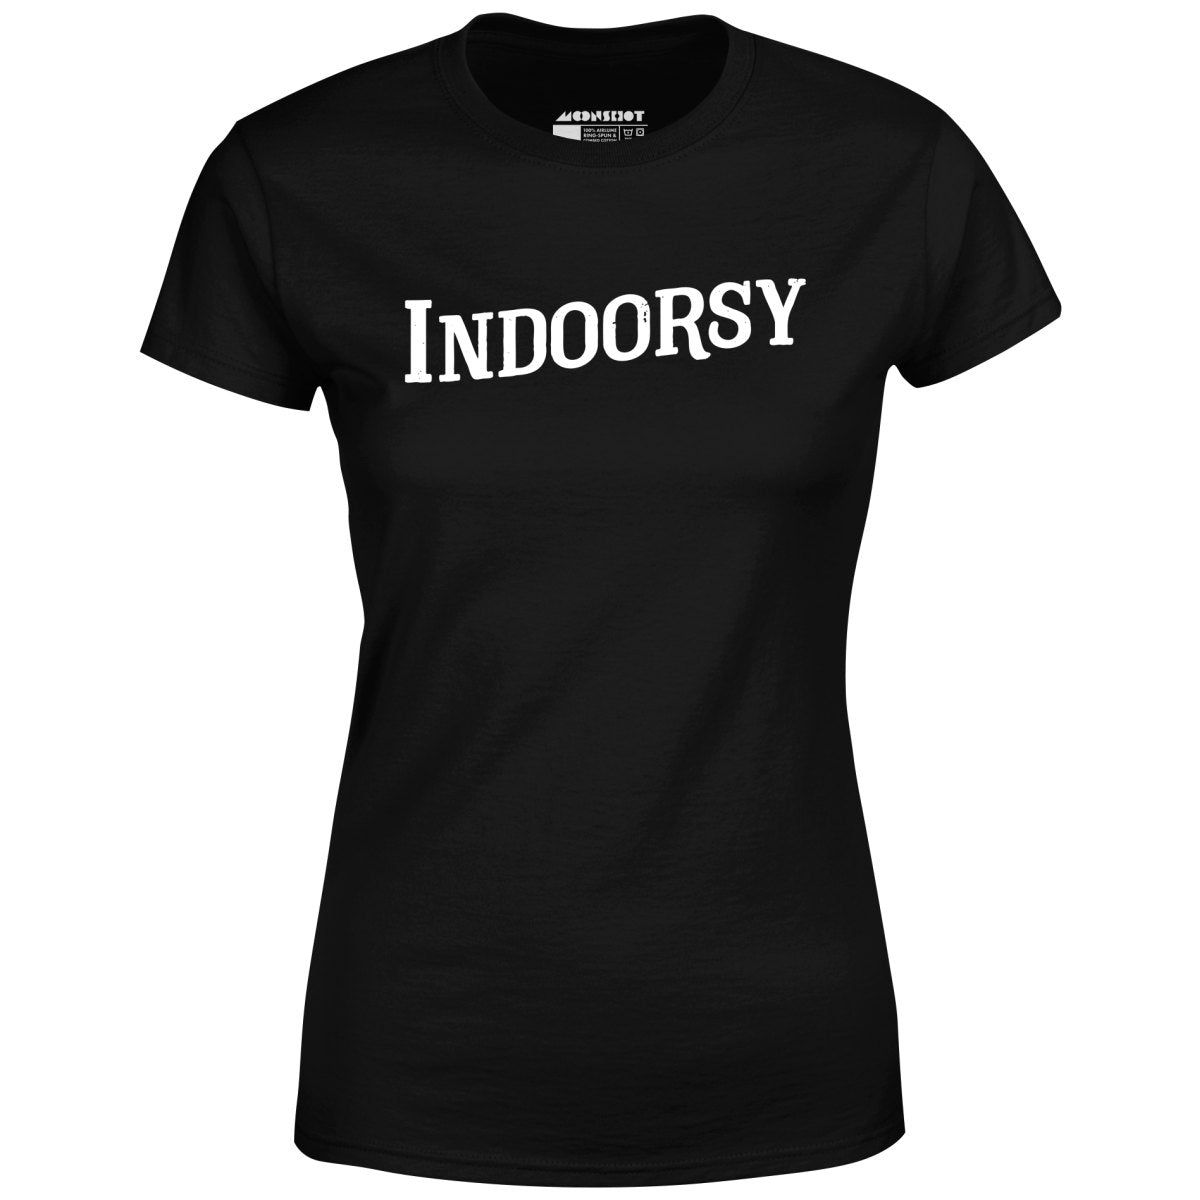 Indoorsy - Women's T-Shirt